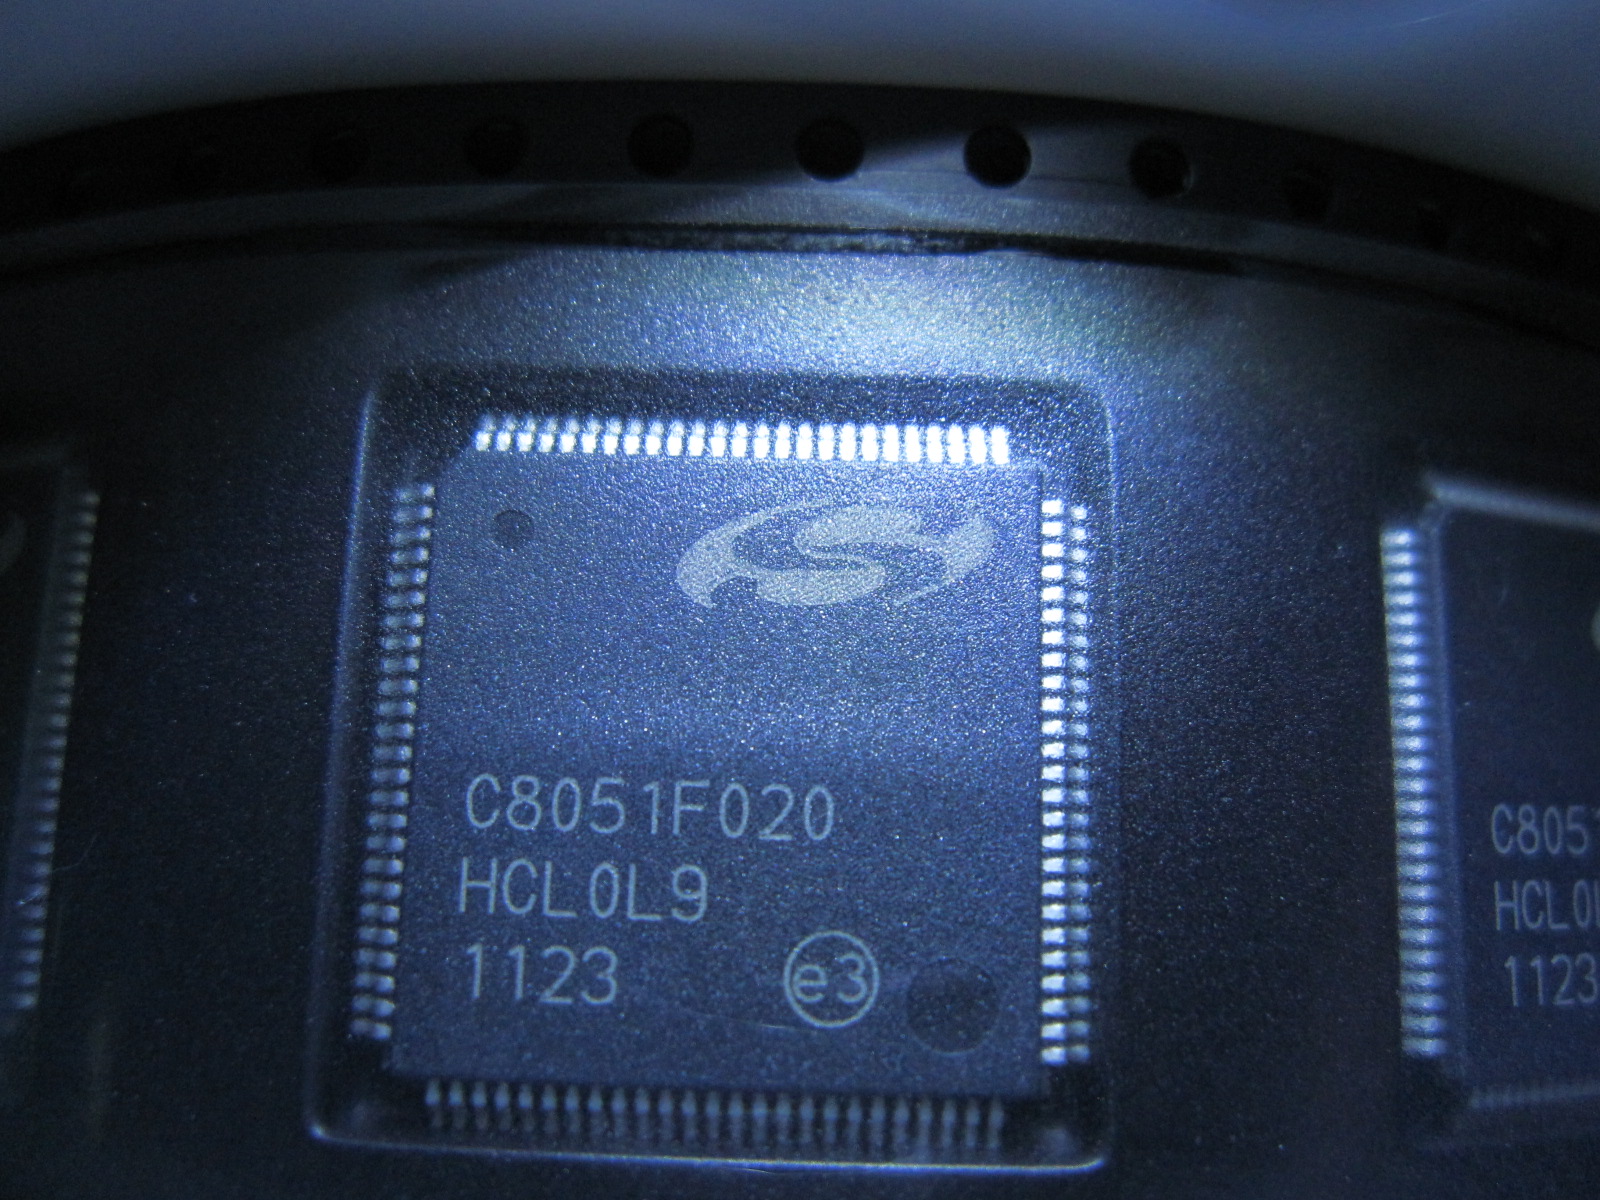  C8051F020-Джи Кью АР полной скорости USB флэш семейства MCU, подлинный 100%оригинал